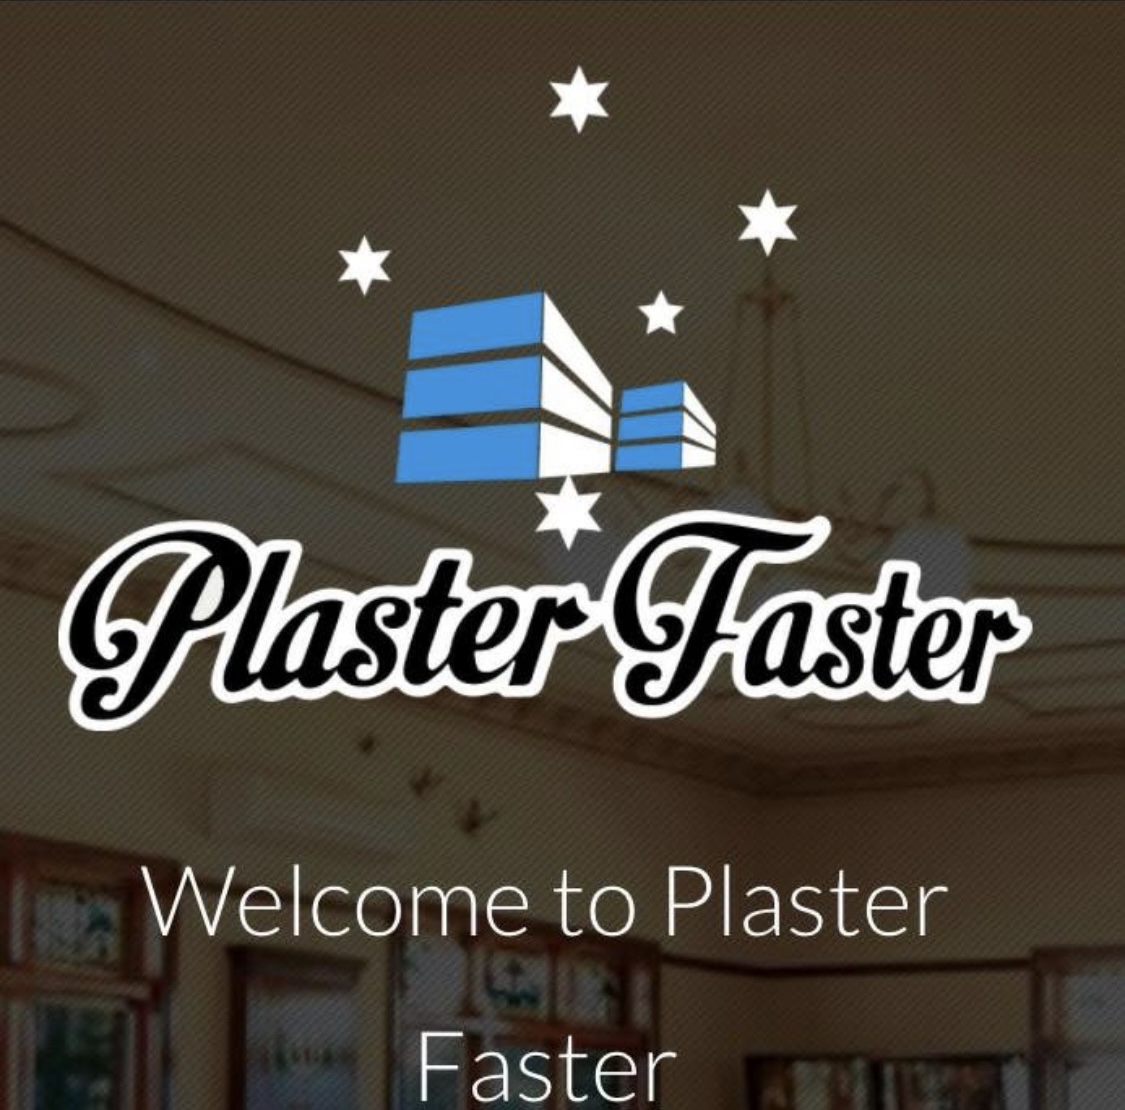 Plaster-Faster-Pty-Ltd-LOGO.jpg